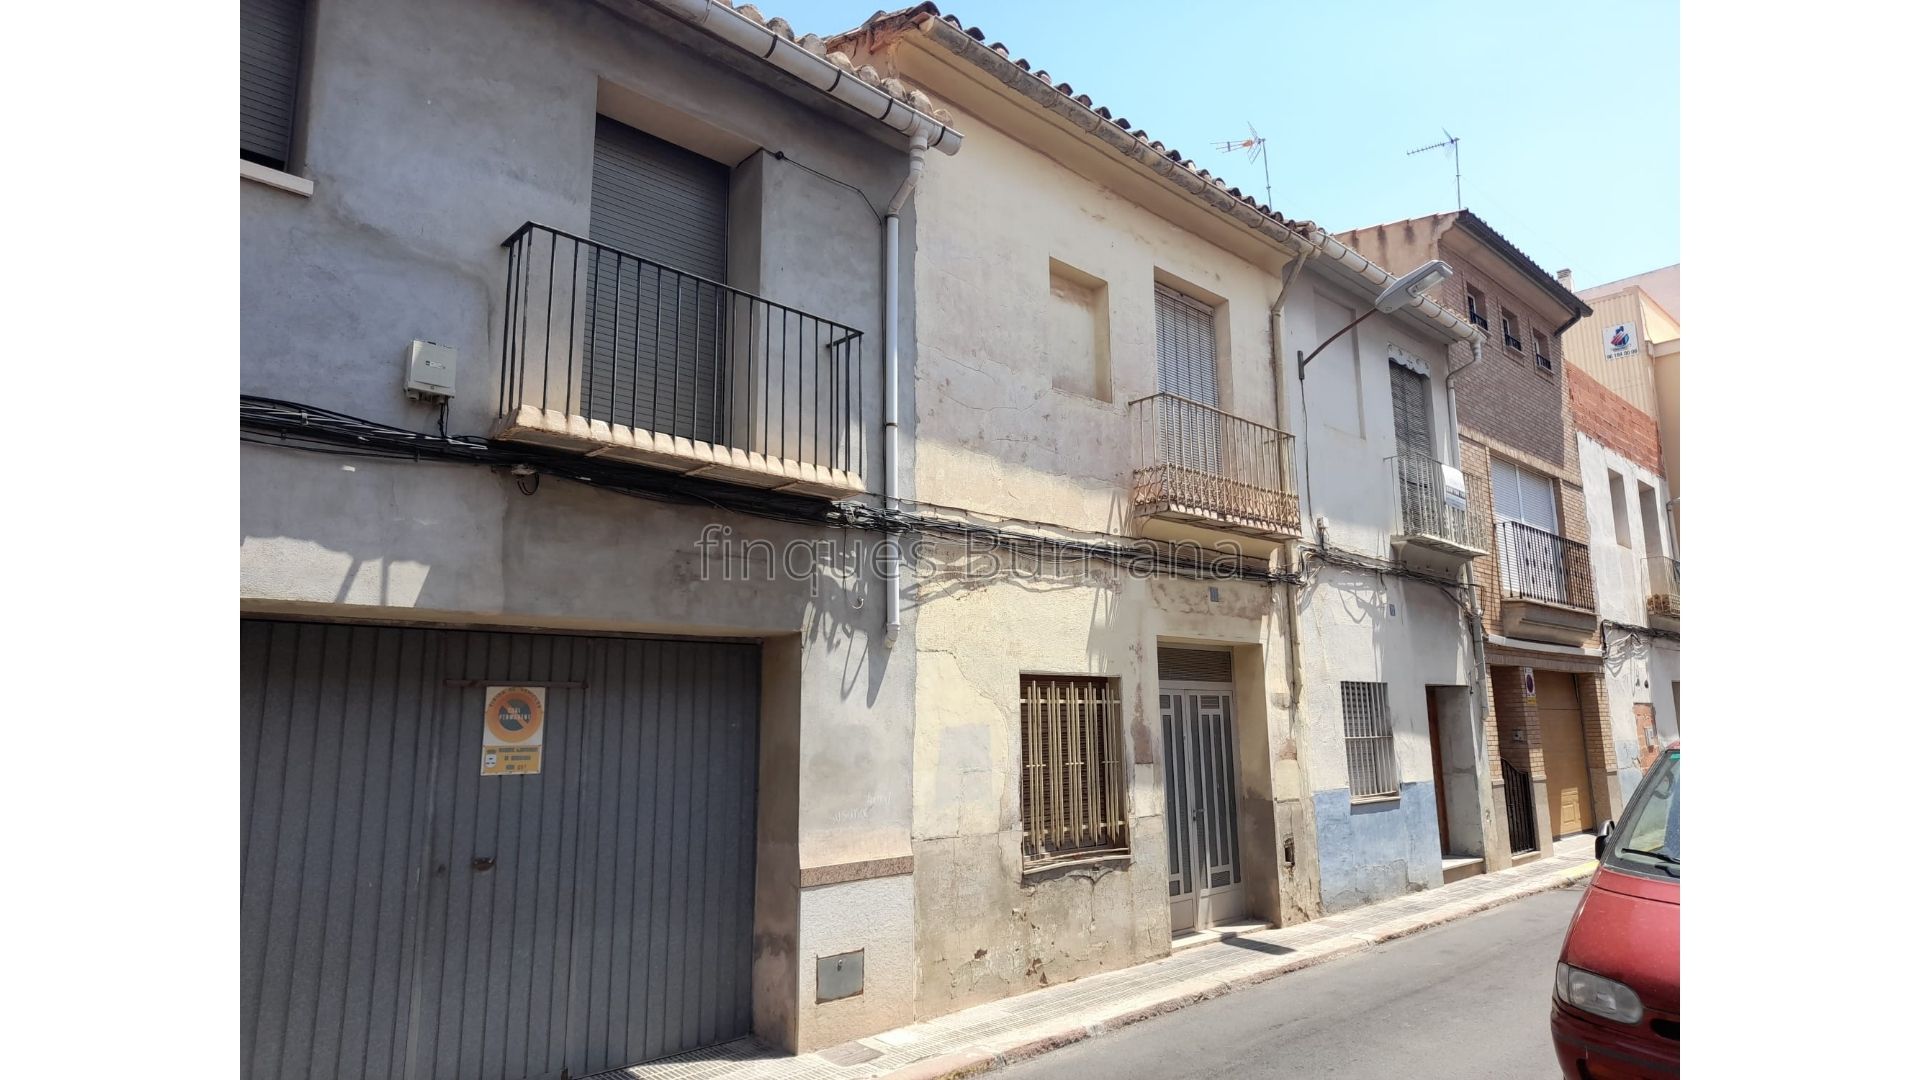 Casa para reformar en Burriana (Castellón) zona centro 